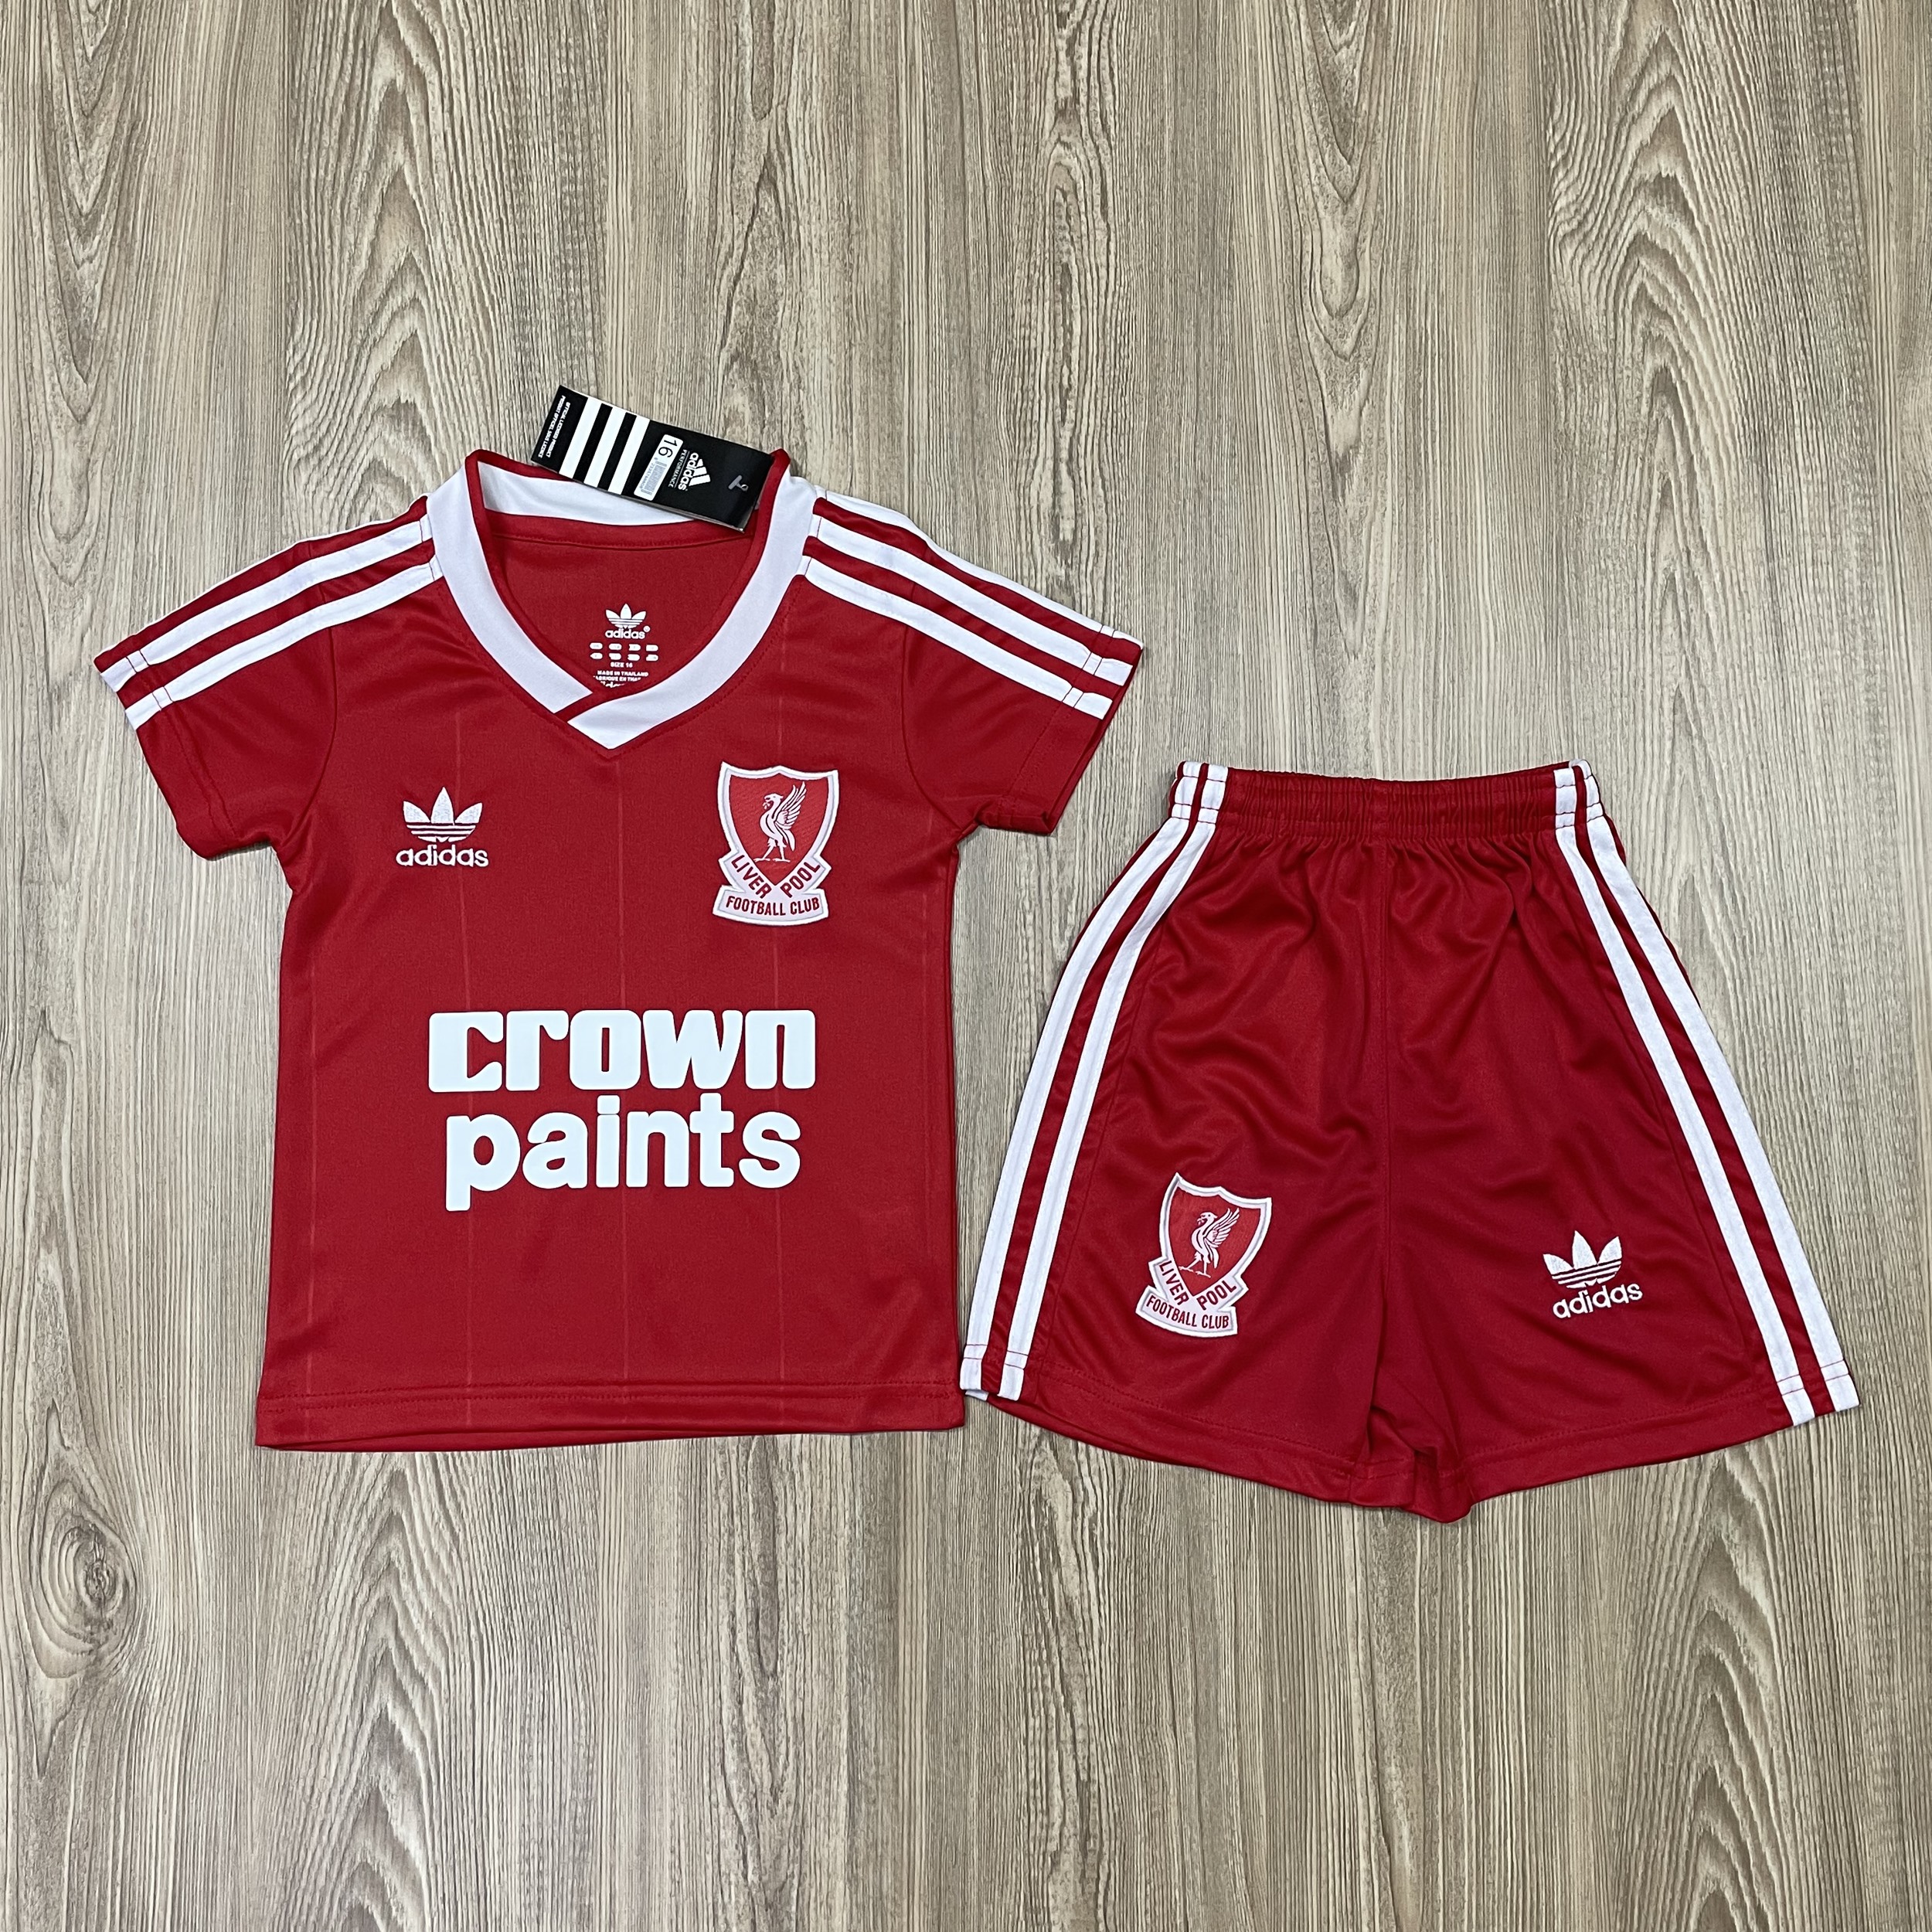 ชุดบอลเด็ก Liverpool ชุดกีฬาเด็ก ทีมลิเวอร์พูล เสื้อบาซ่า  ซื้อครั้งเดียวได้ทั้งชุด (เสื้อ+กางเกง) ตัวเดียวในราคาส่ง สินค้าเกรด-A